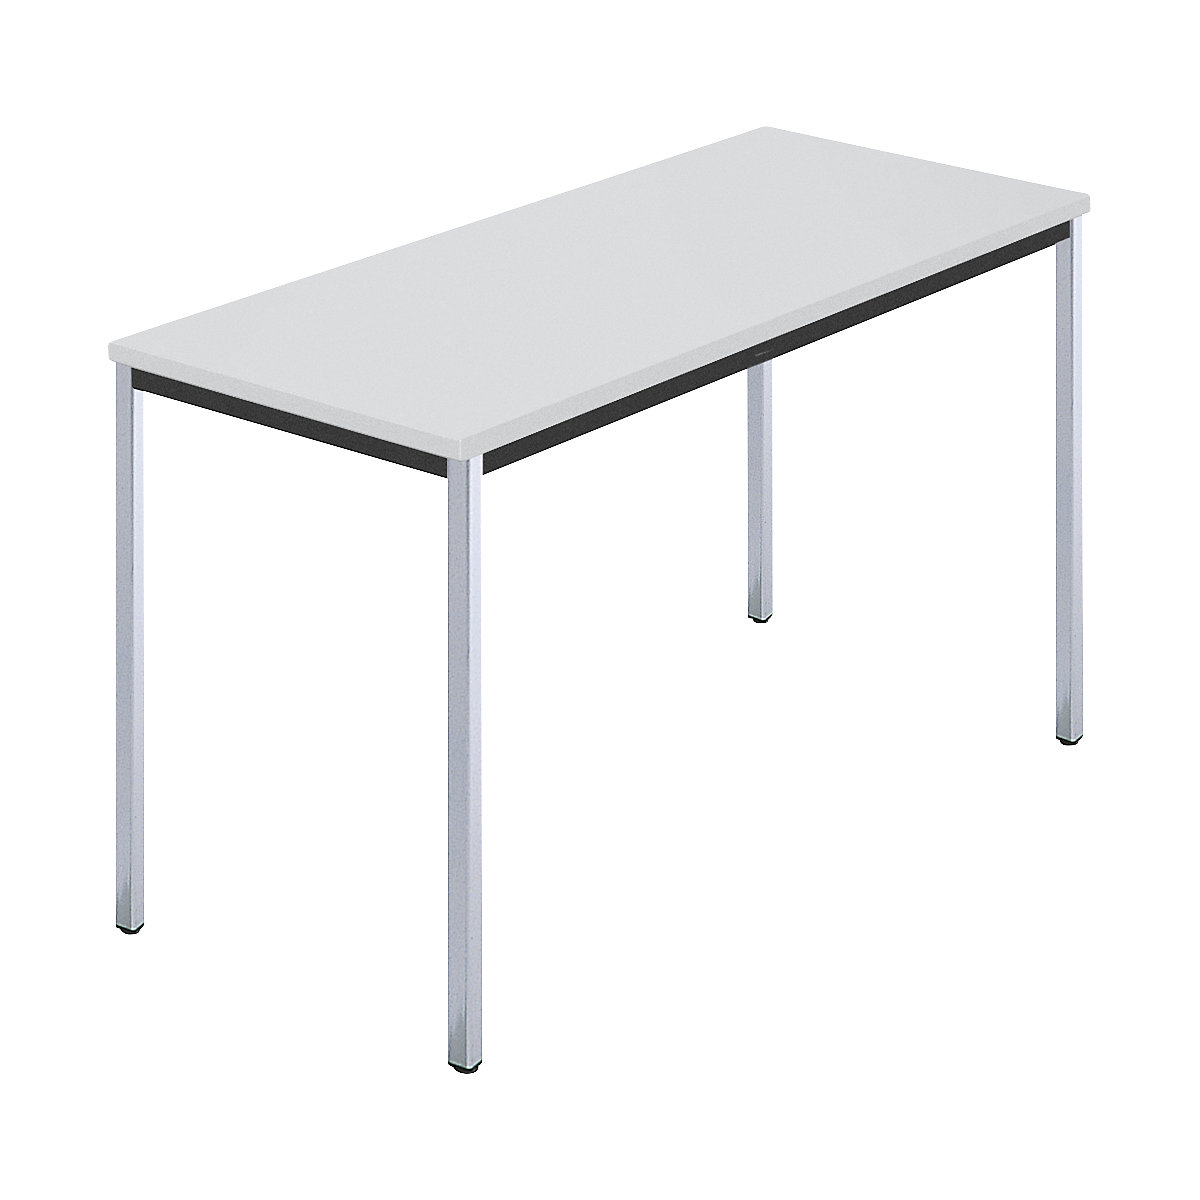 Rechthoekige tafel, met vierkante, verchroomde tafelpoten, b x d = 1200 x 600 mm, grijs-6